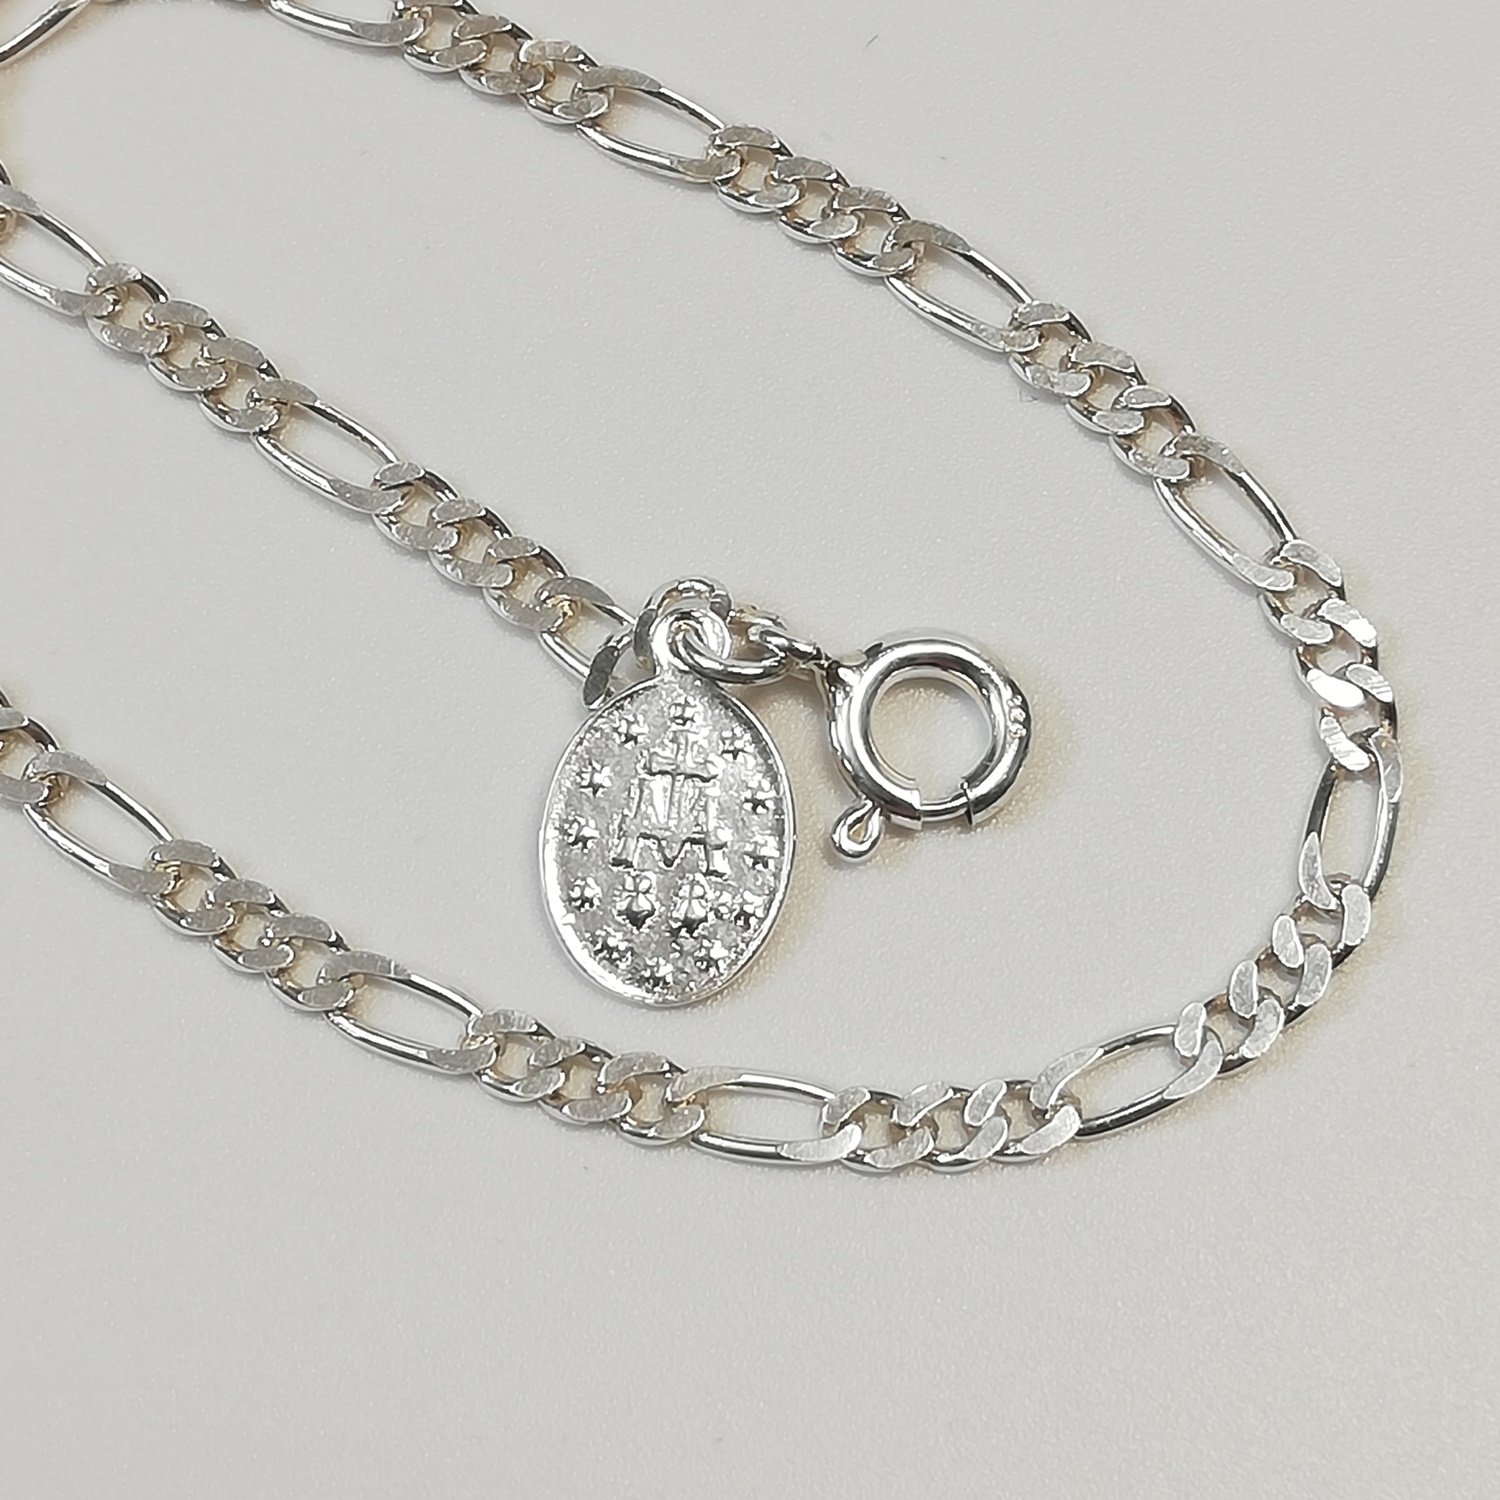 bransoletka zawierzenia Maryi,łańcuch niewoli Maryi,zawierzenie się Jezusowi przez ręce Maryi,bransoletka srebrna